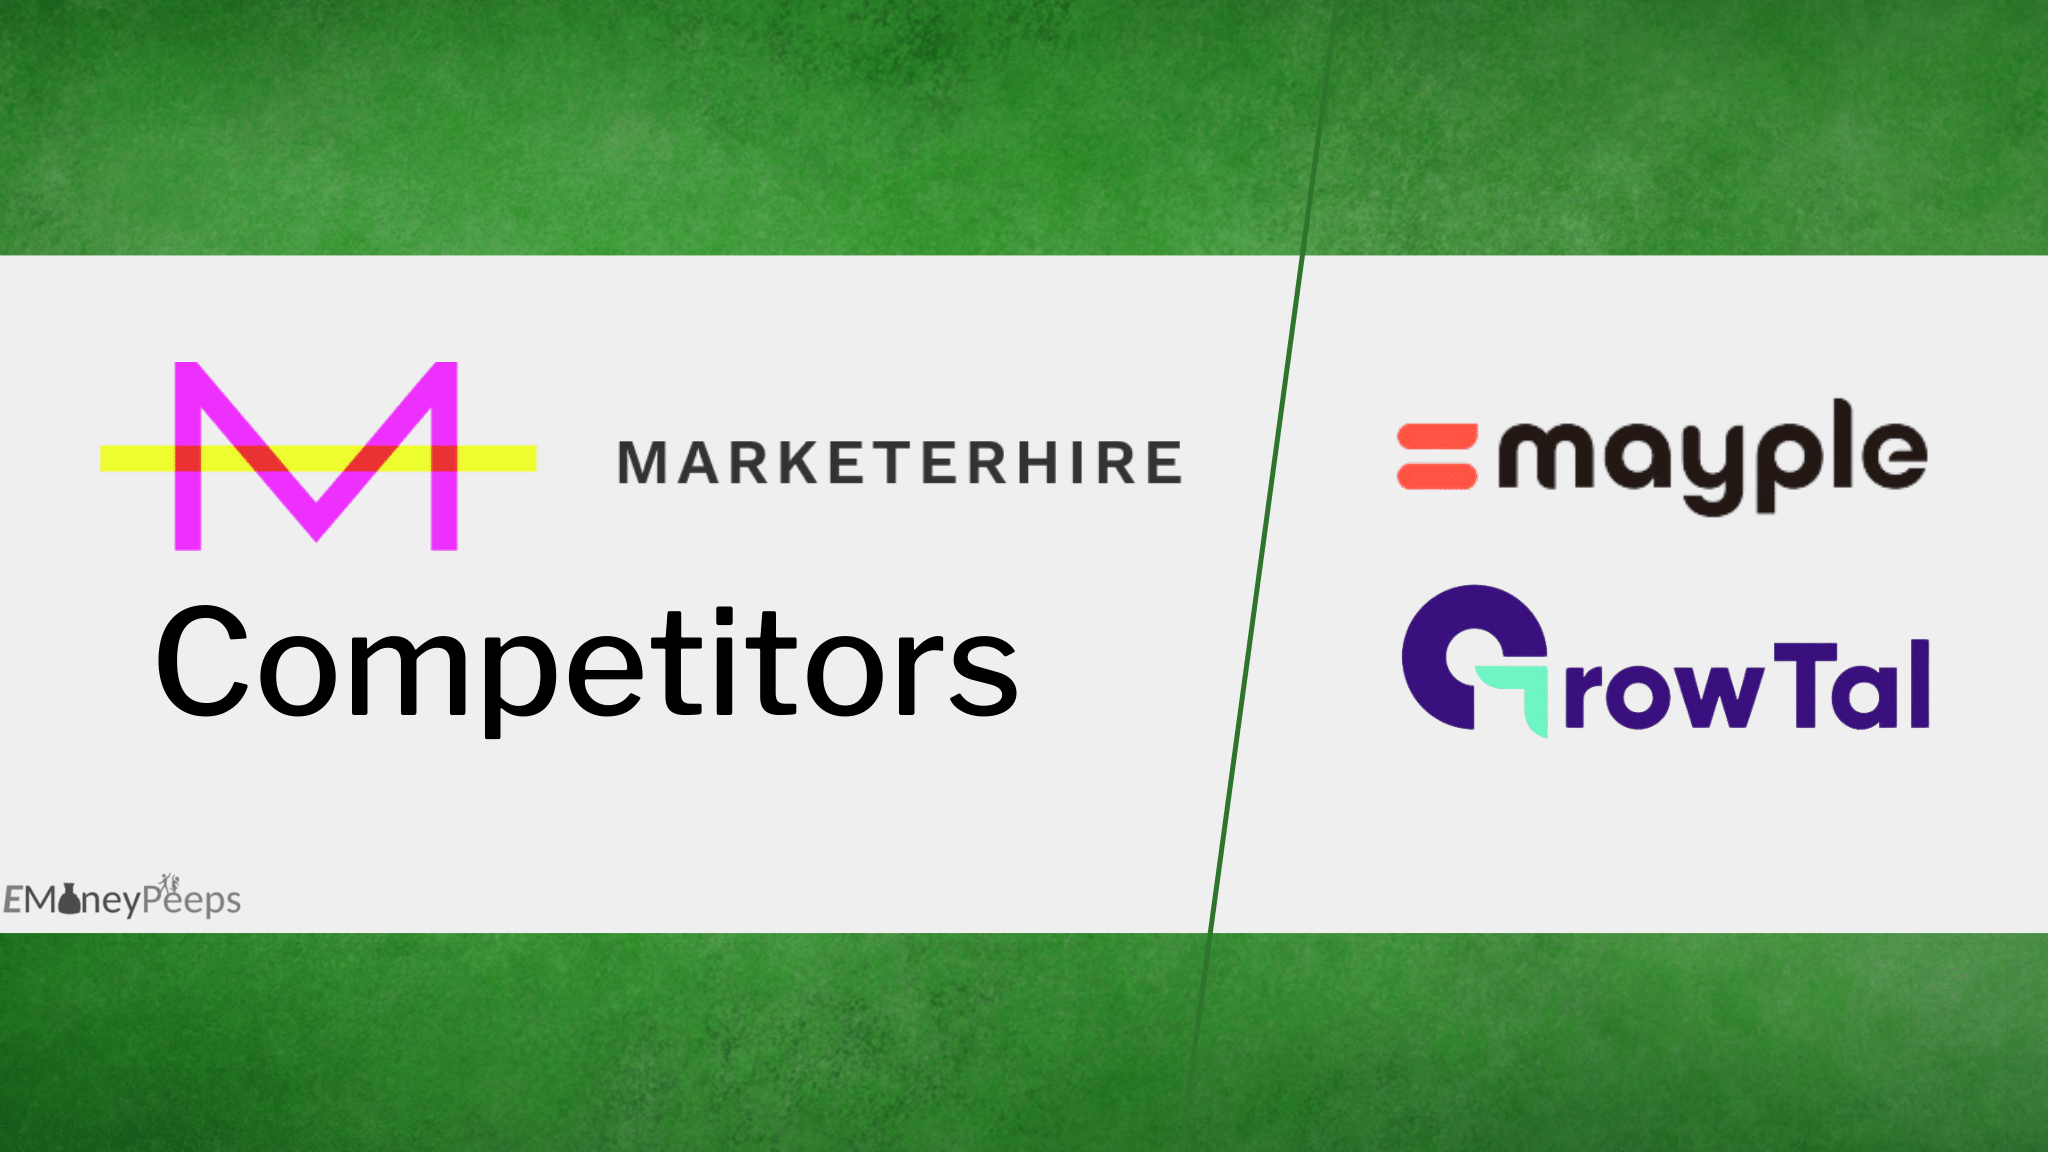 MarketerHire Competitors